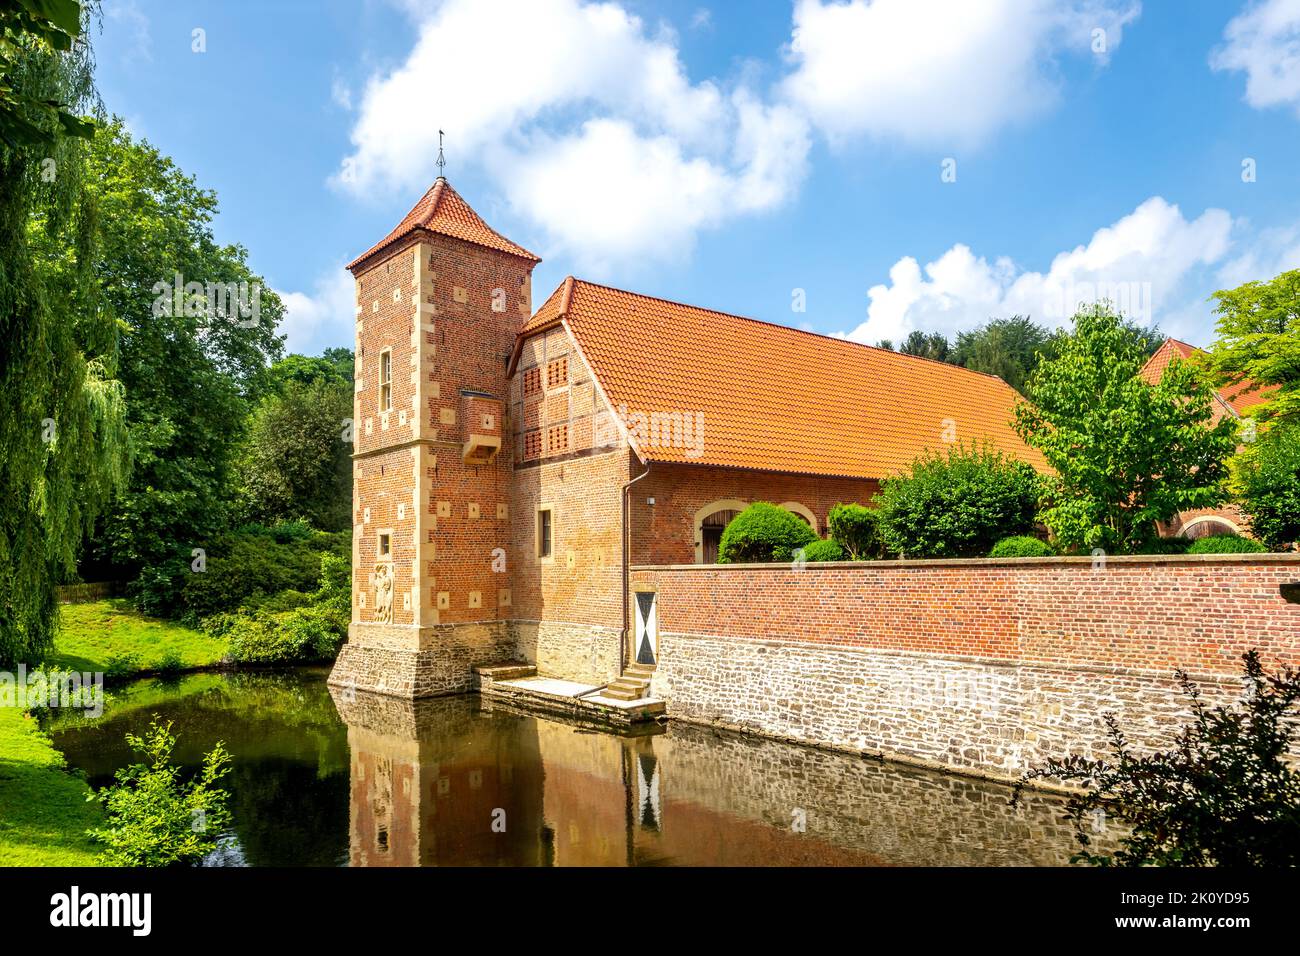 Castle in Huelshoff in Muenster, Germany Stock Photo